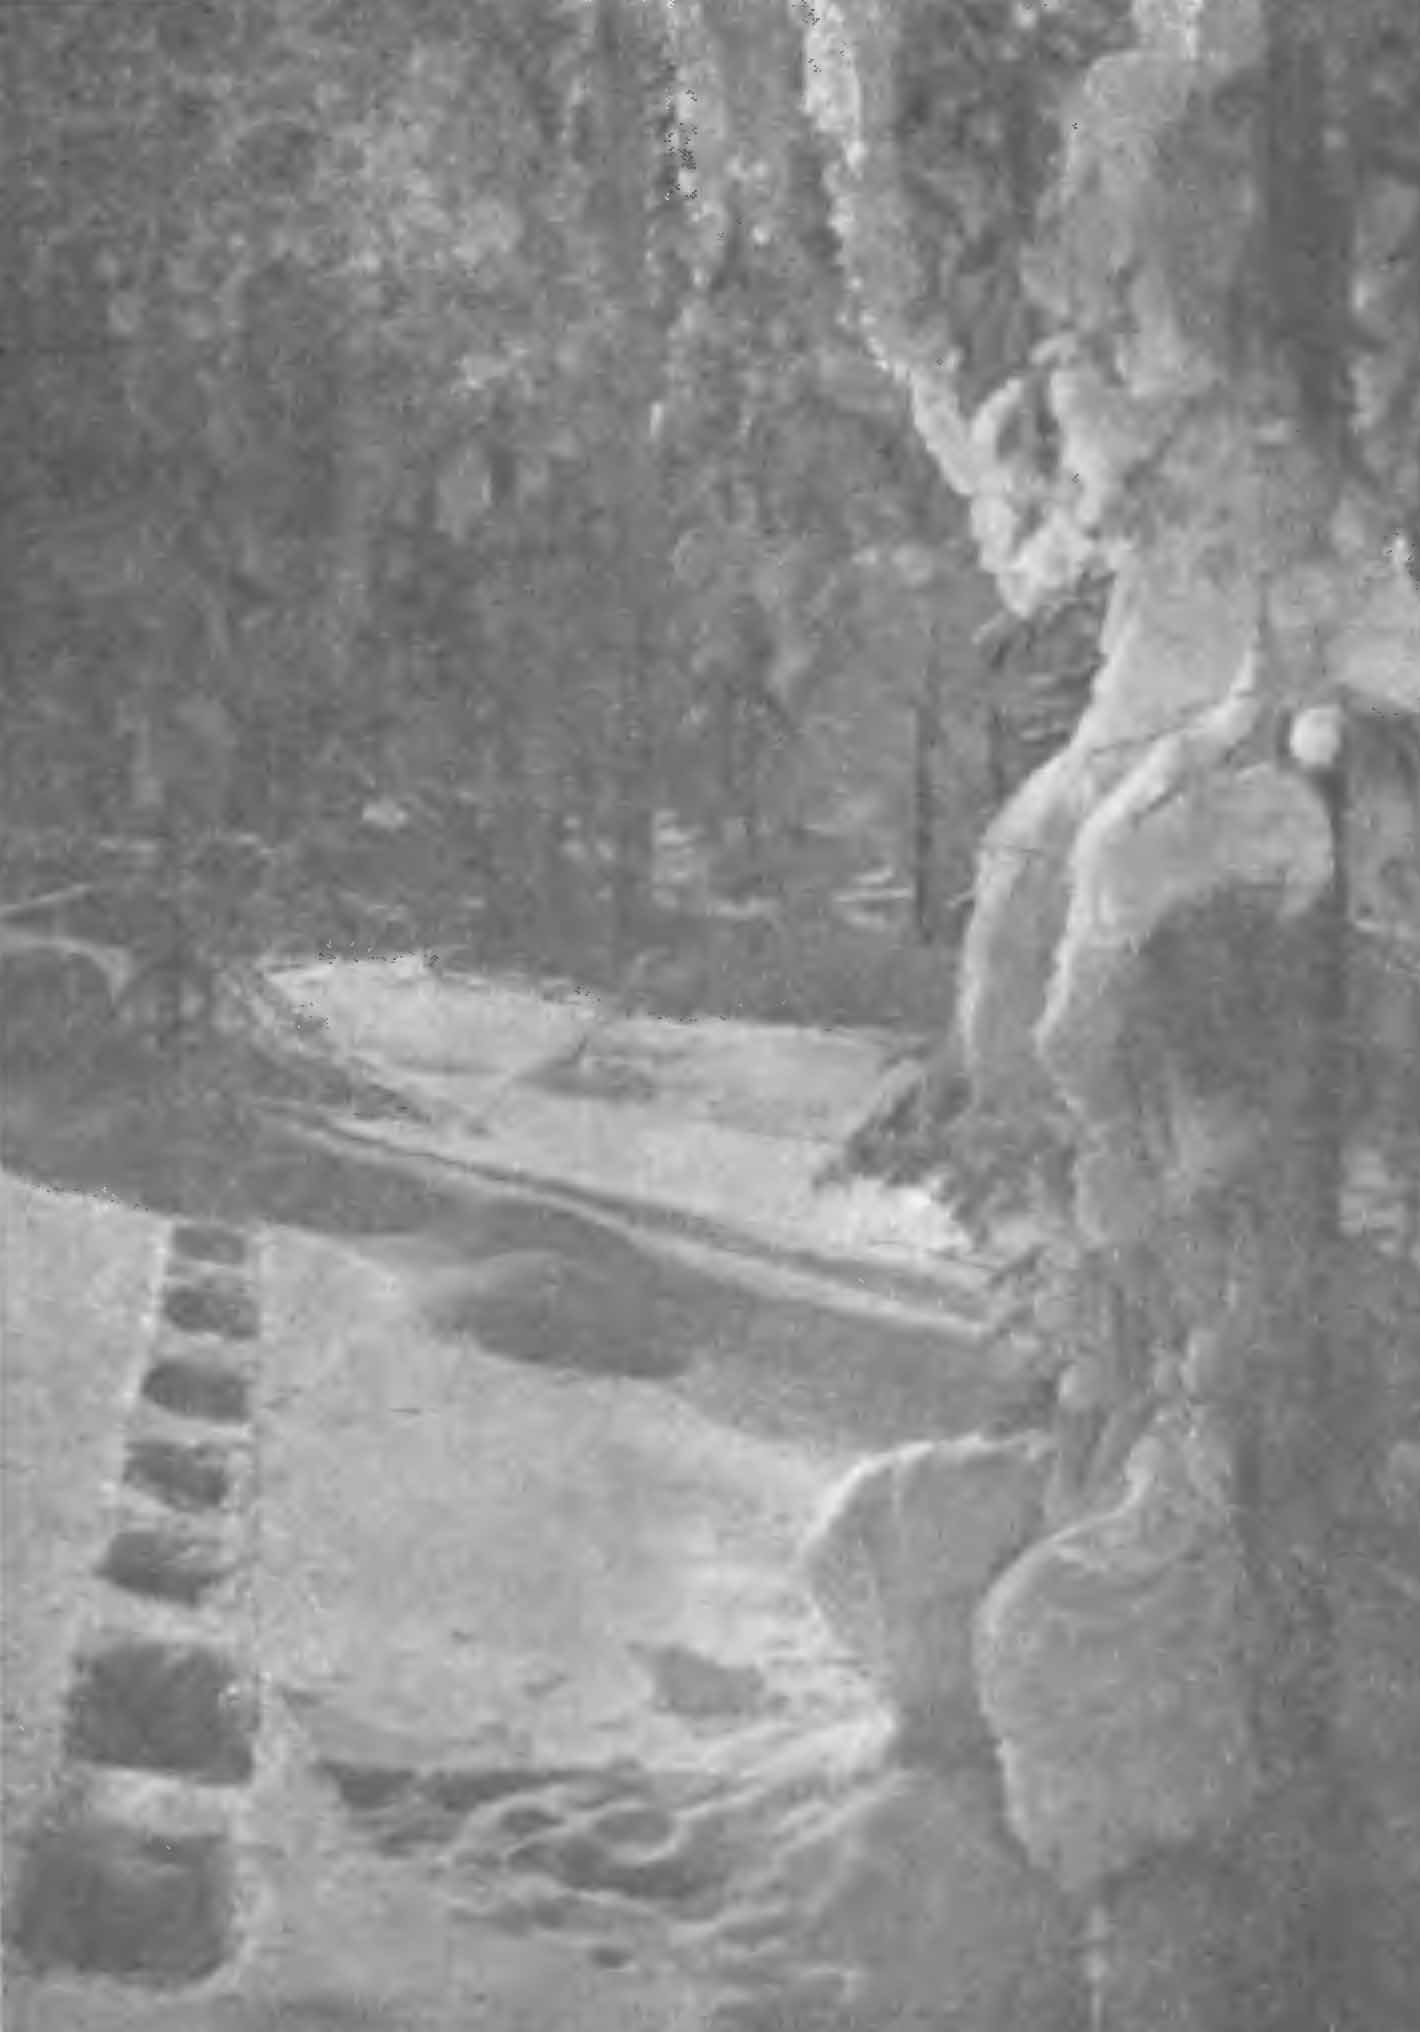 Рис. 5. Следы росомахи (Gulo gulo L.) по глубокому снегу. Алтай, январь 1950 г.
